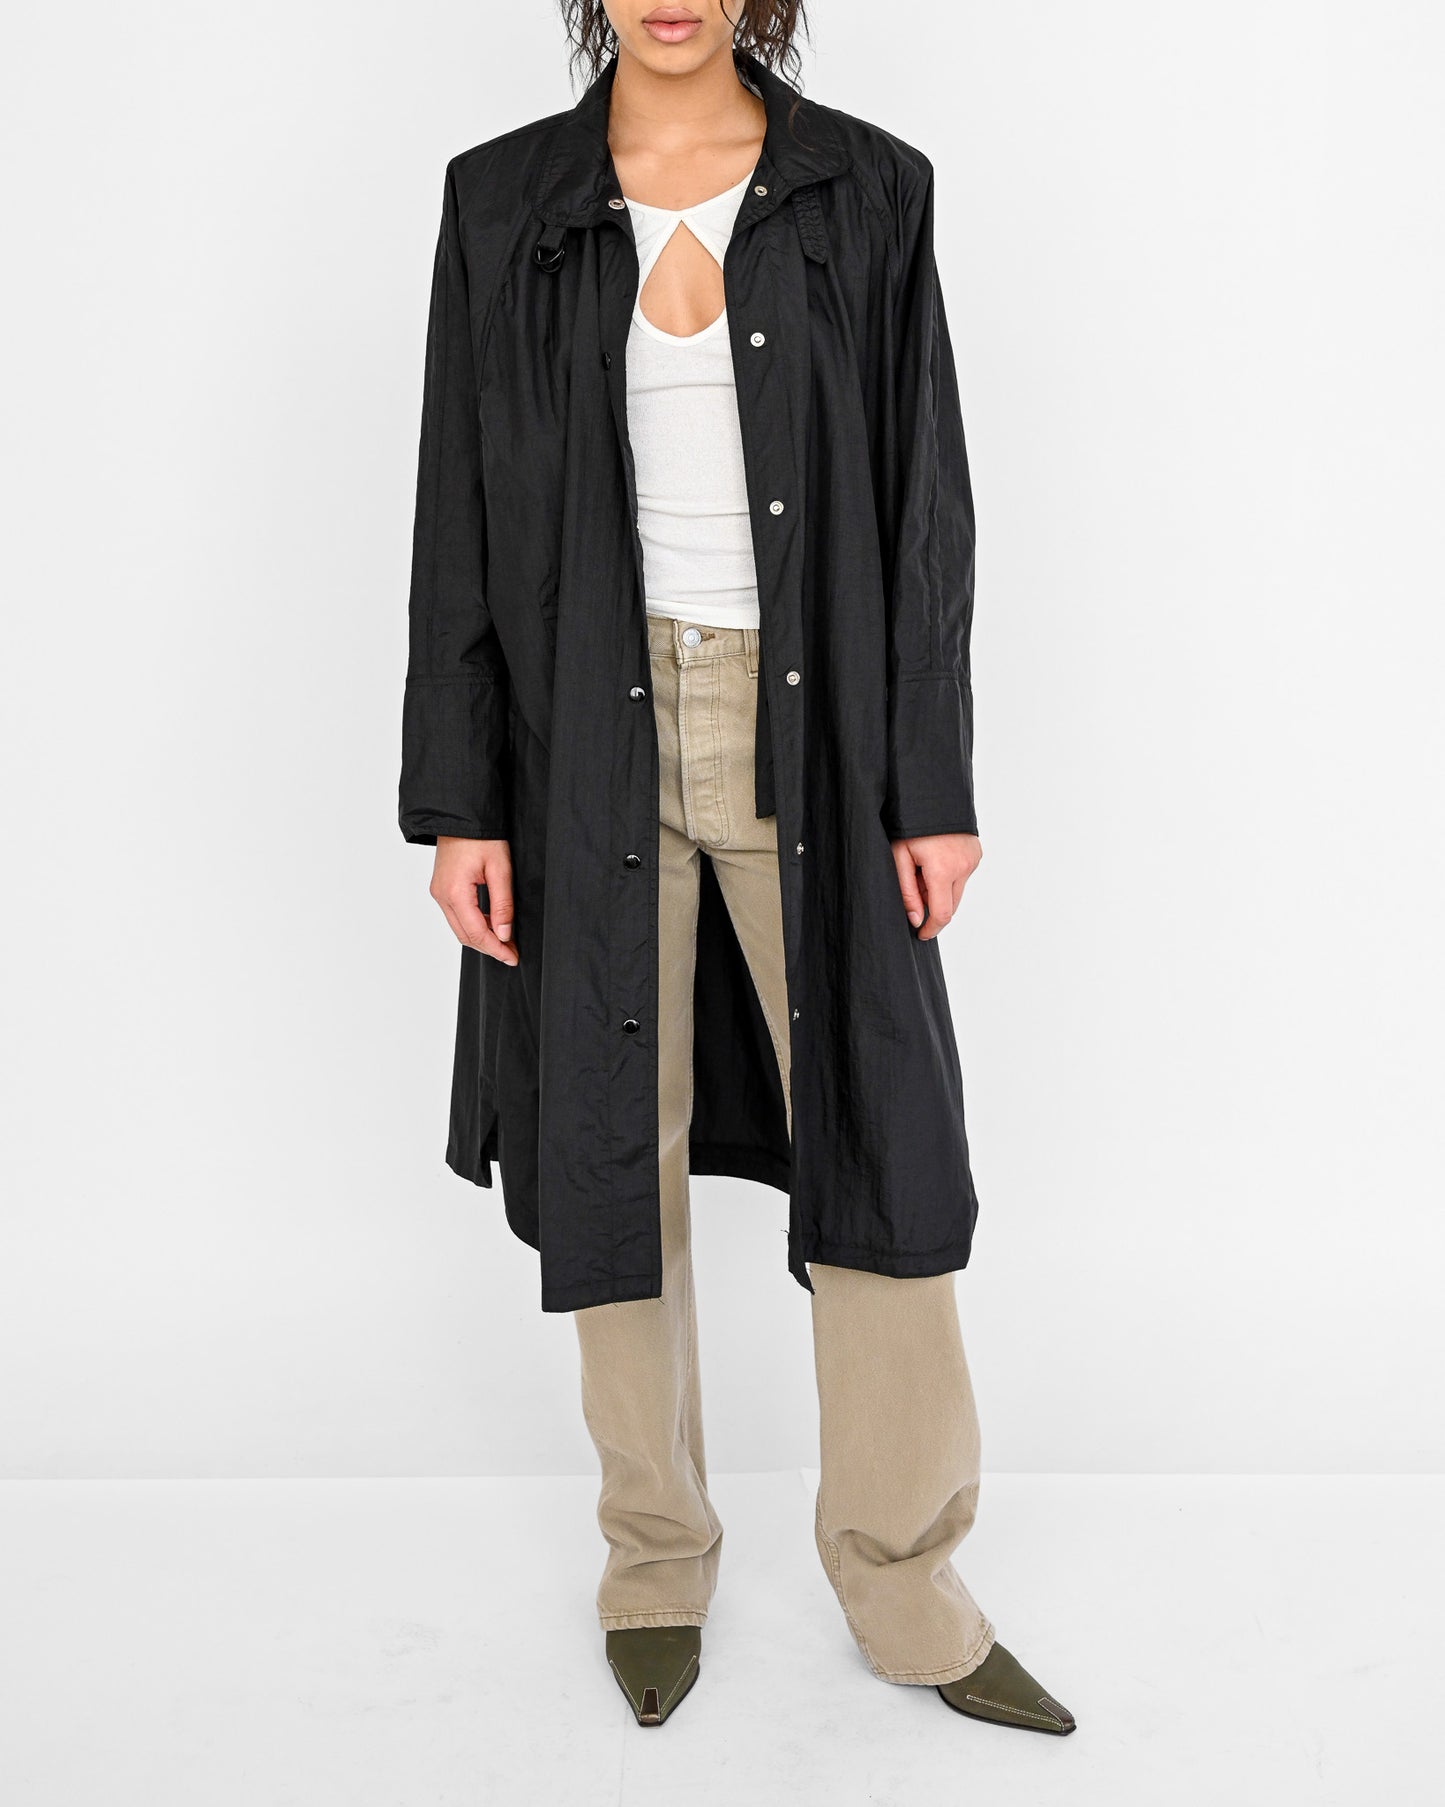 Black Nylon Long Jacket (L)